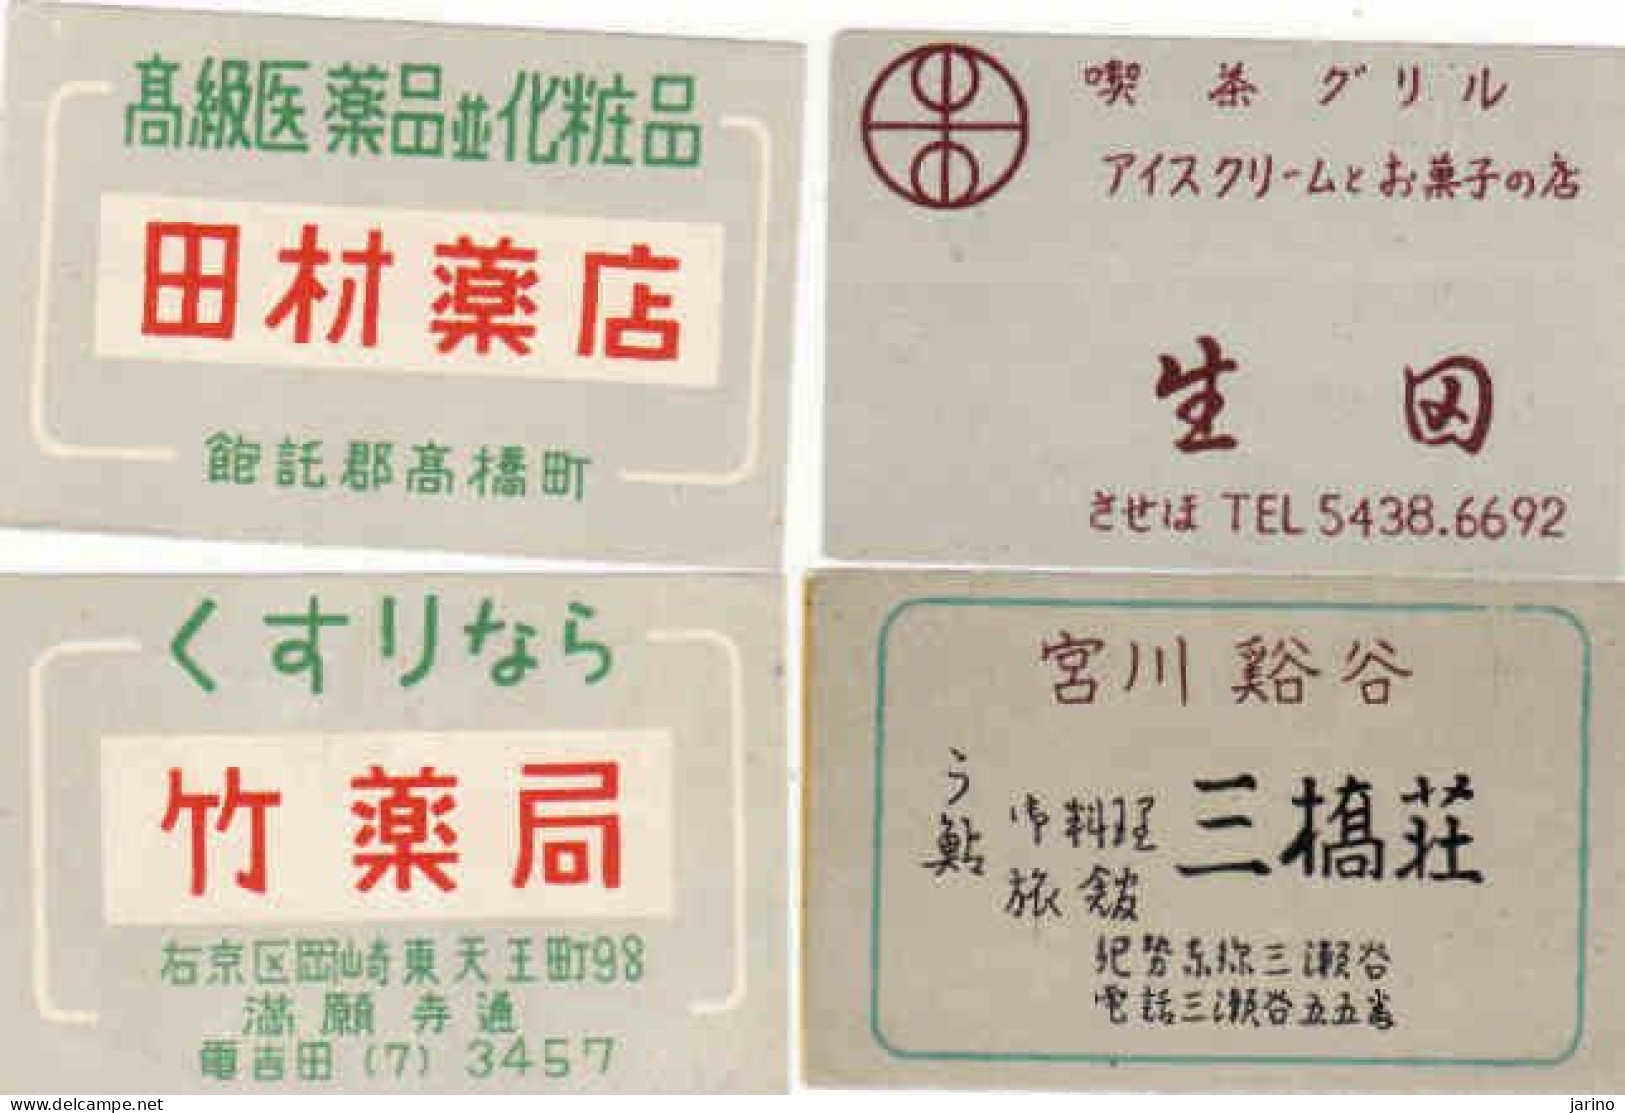 Japan - 4 Matchbox Labels - Boites D'allumettes - Etiquettes